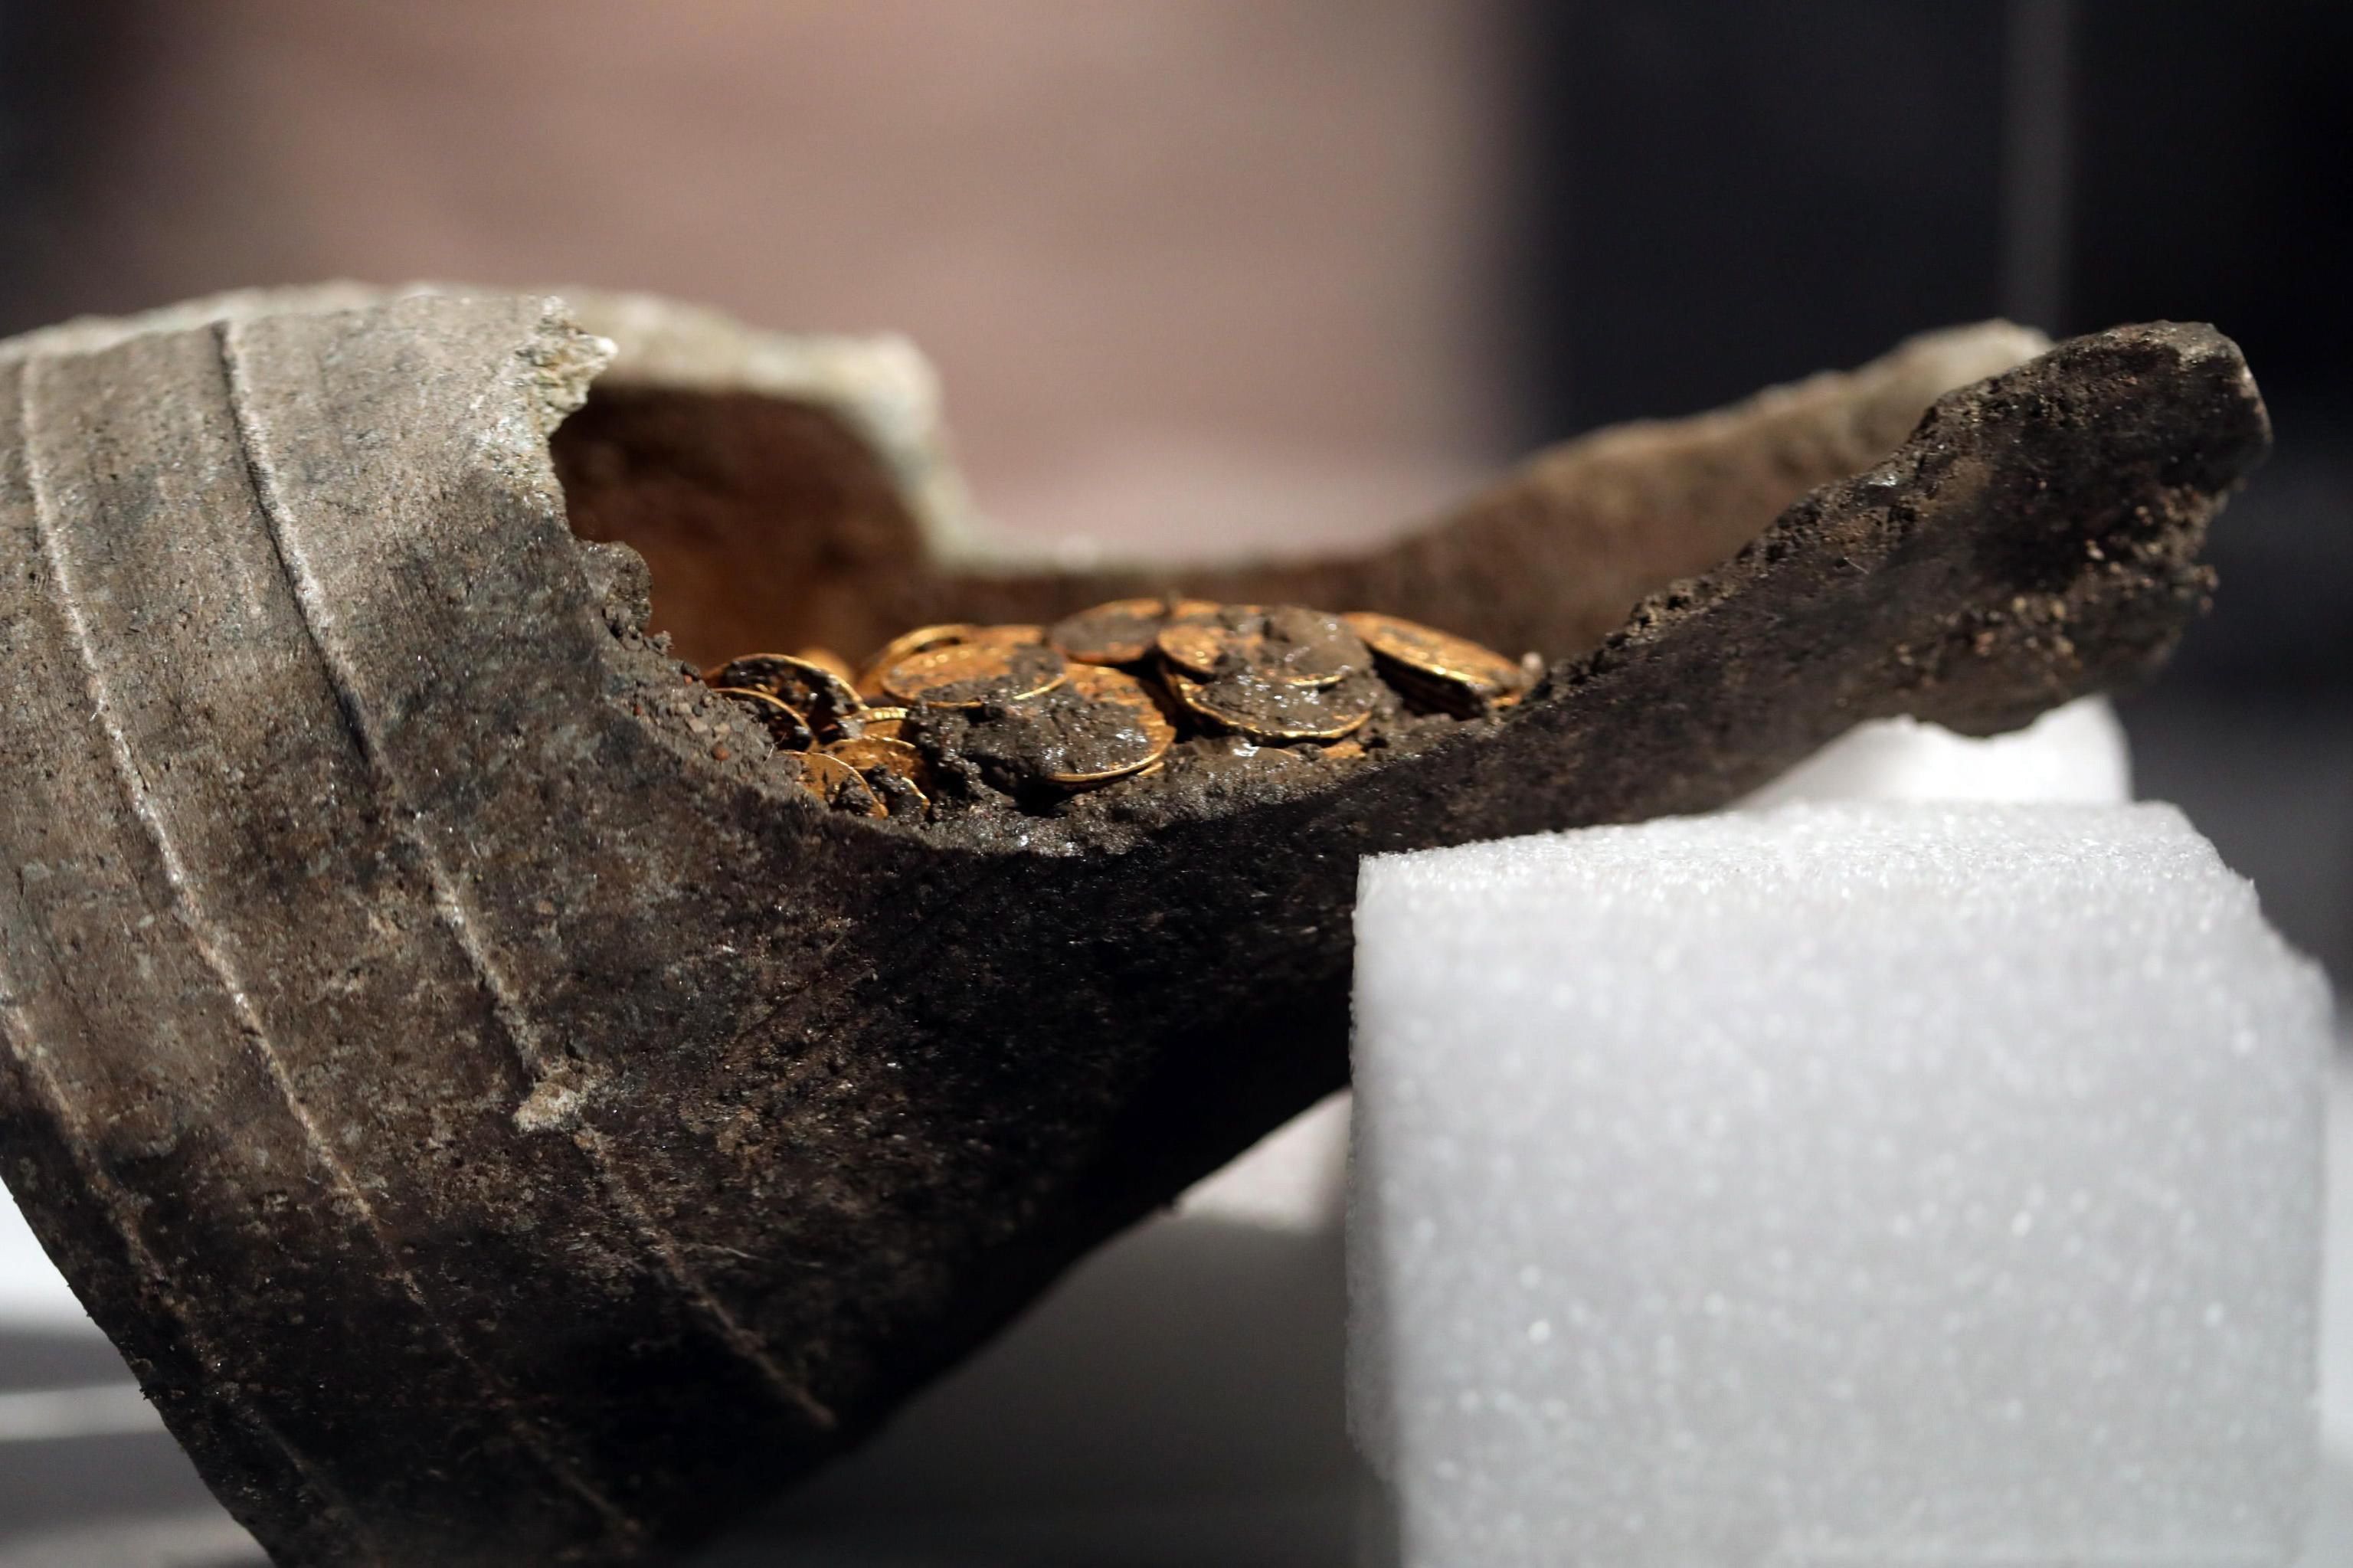  Descubren tesoro escondido con cientos de monedas de oro del Imperio romano